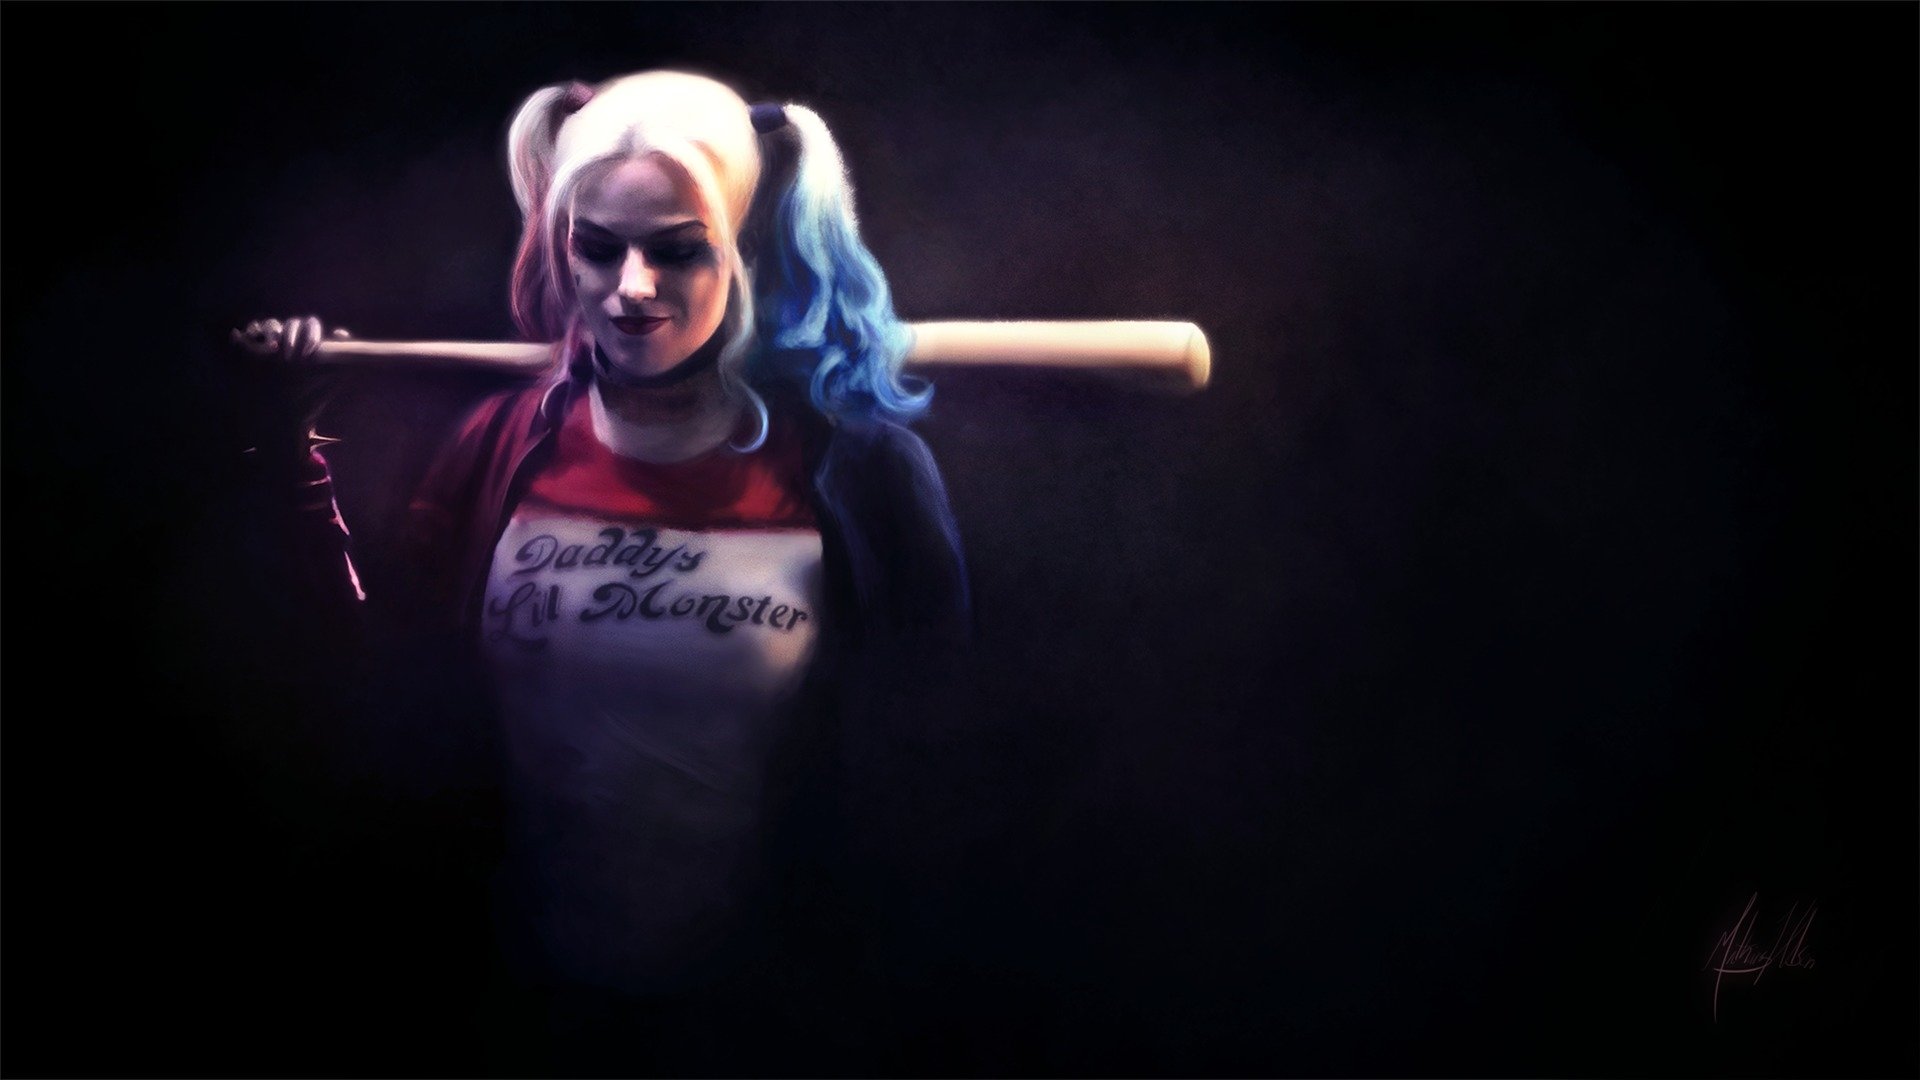 35 Gambar Joker and Harley Quinn Hd Wallpapers 1080p terbaru 2020